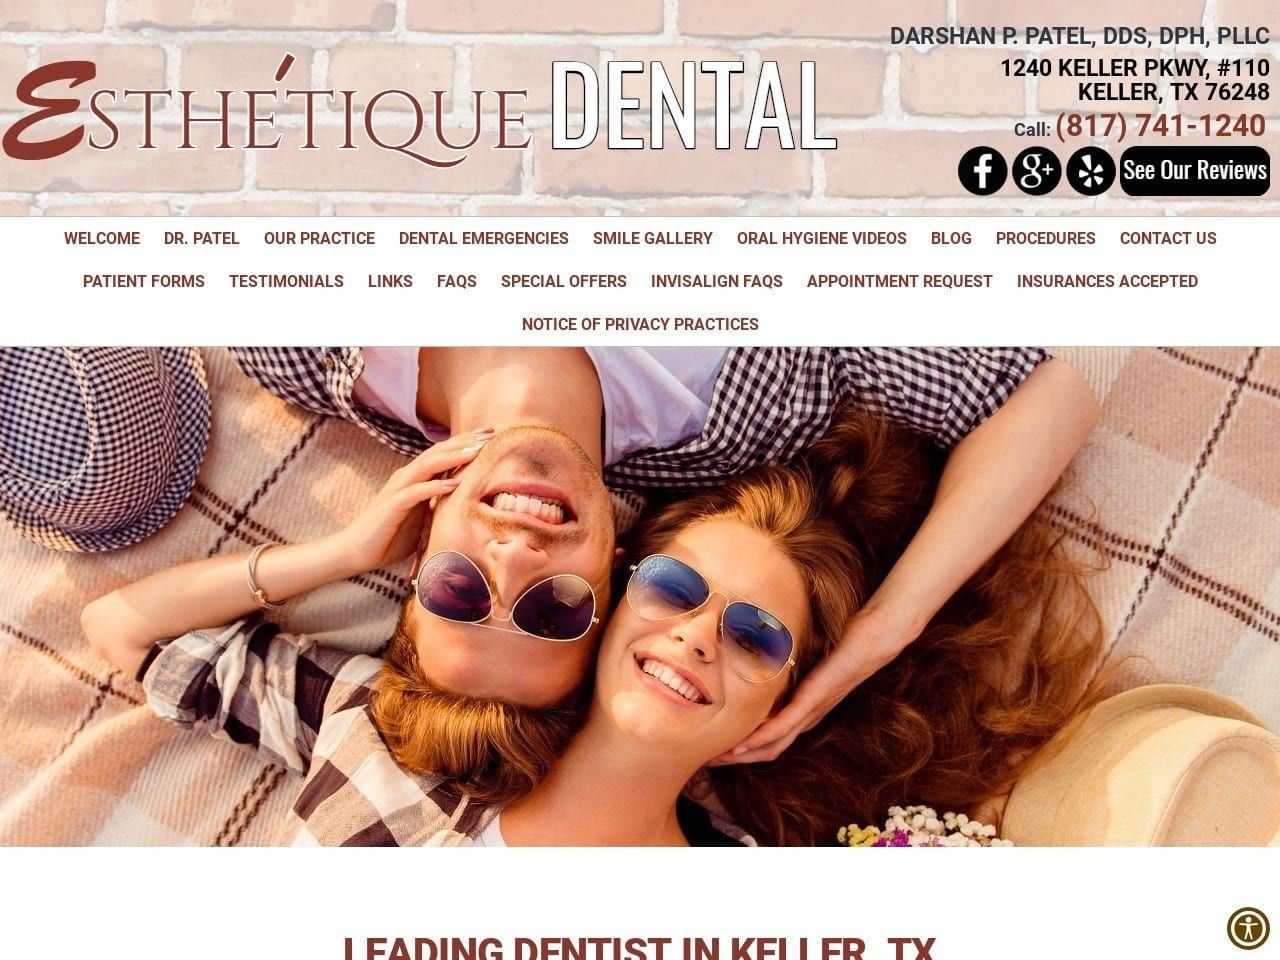 Darshan Patel DDS Esthetique Dental Website Screenshot from esthetiquedental.com